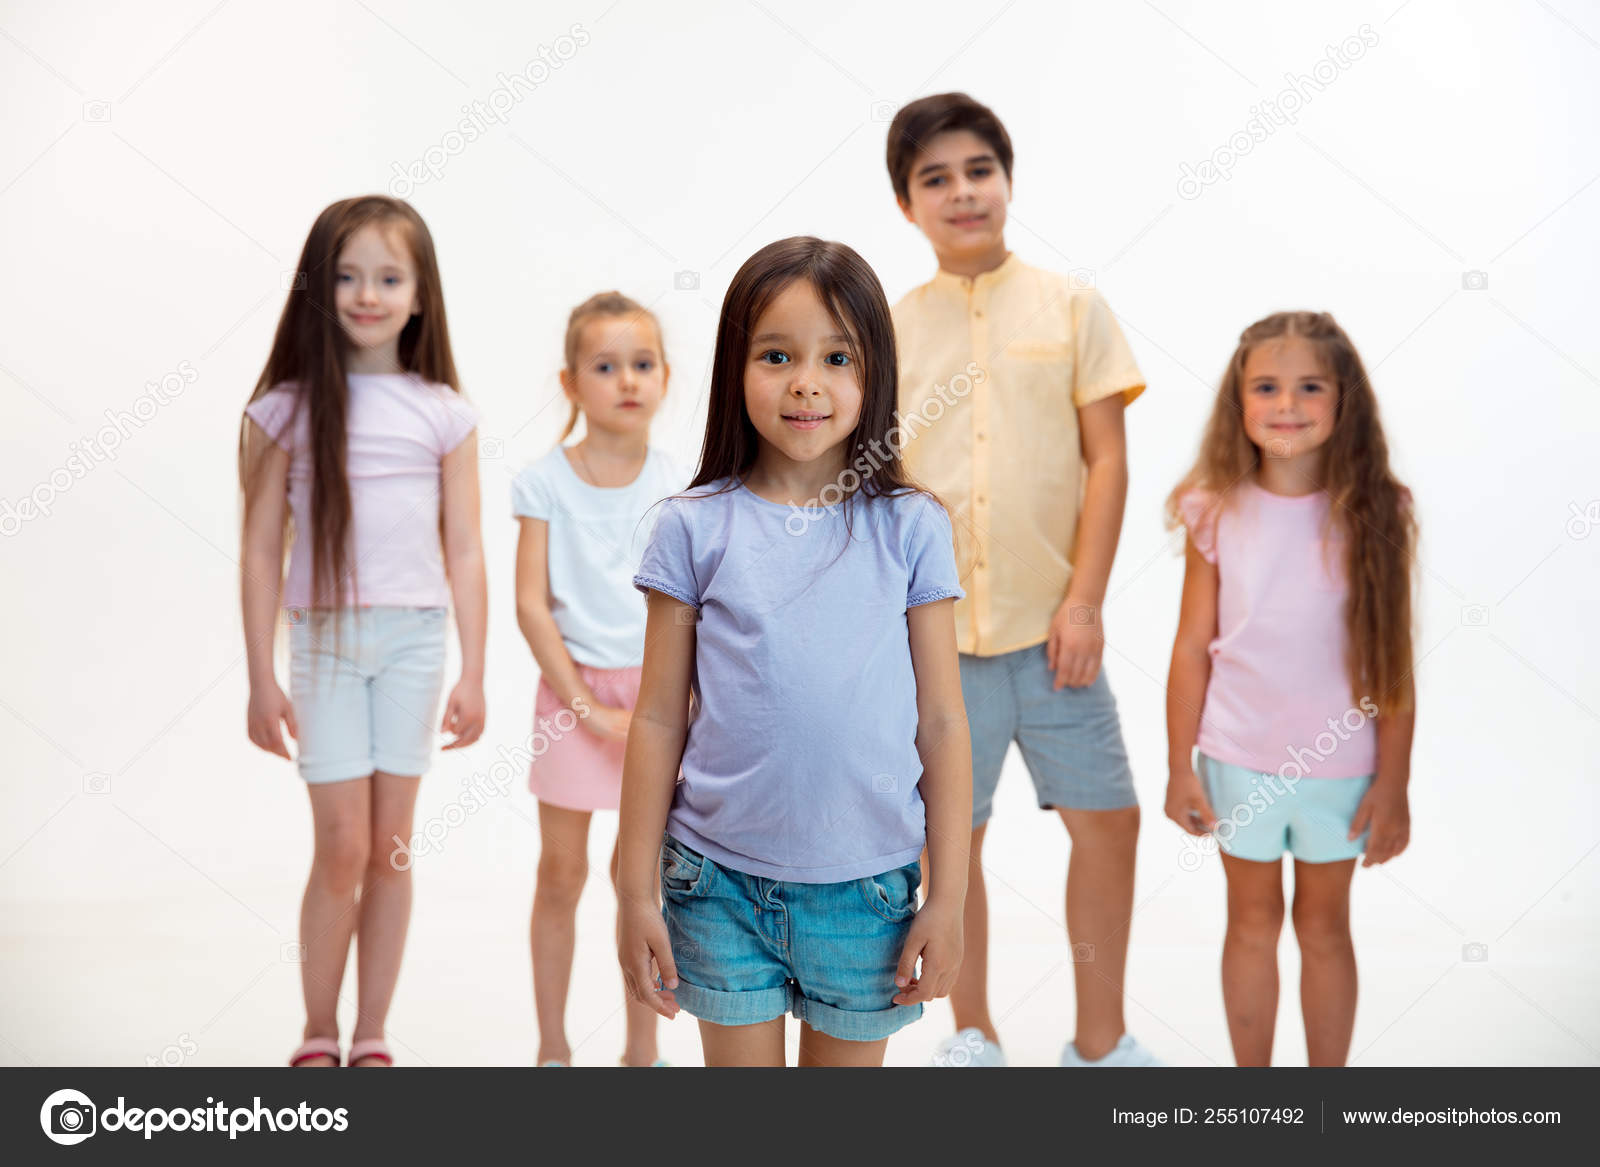 El retrato de los niños y niñas lindos en ropa elegante mirando a la cámara en el estudio: fotografía stock © vova130555@gmail.com #255107492 | Depositphotos